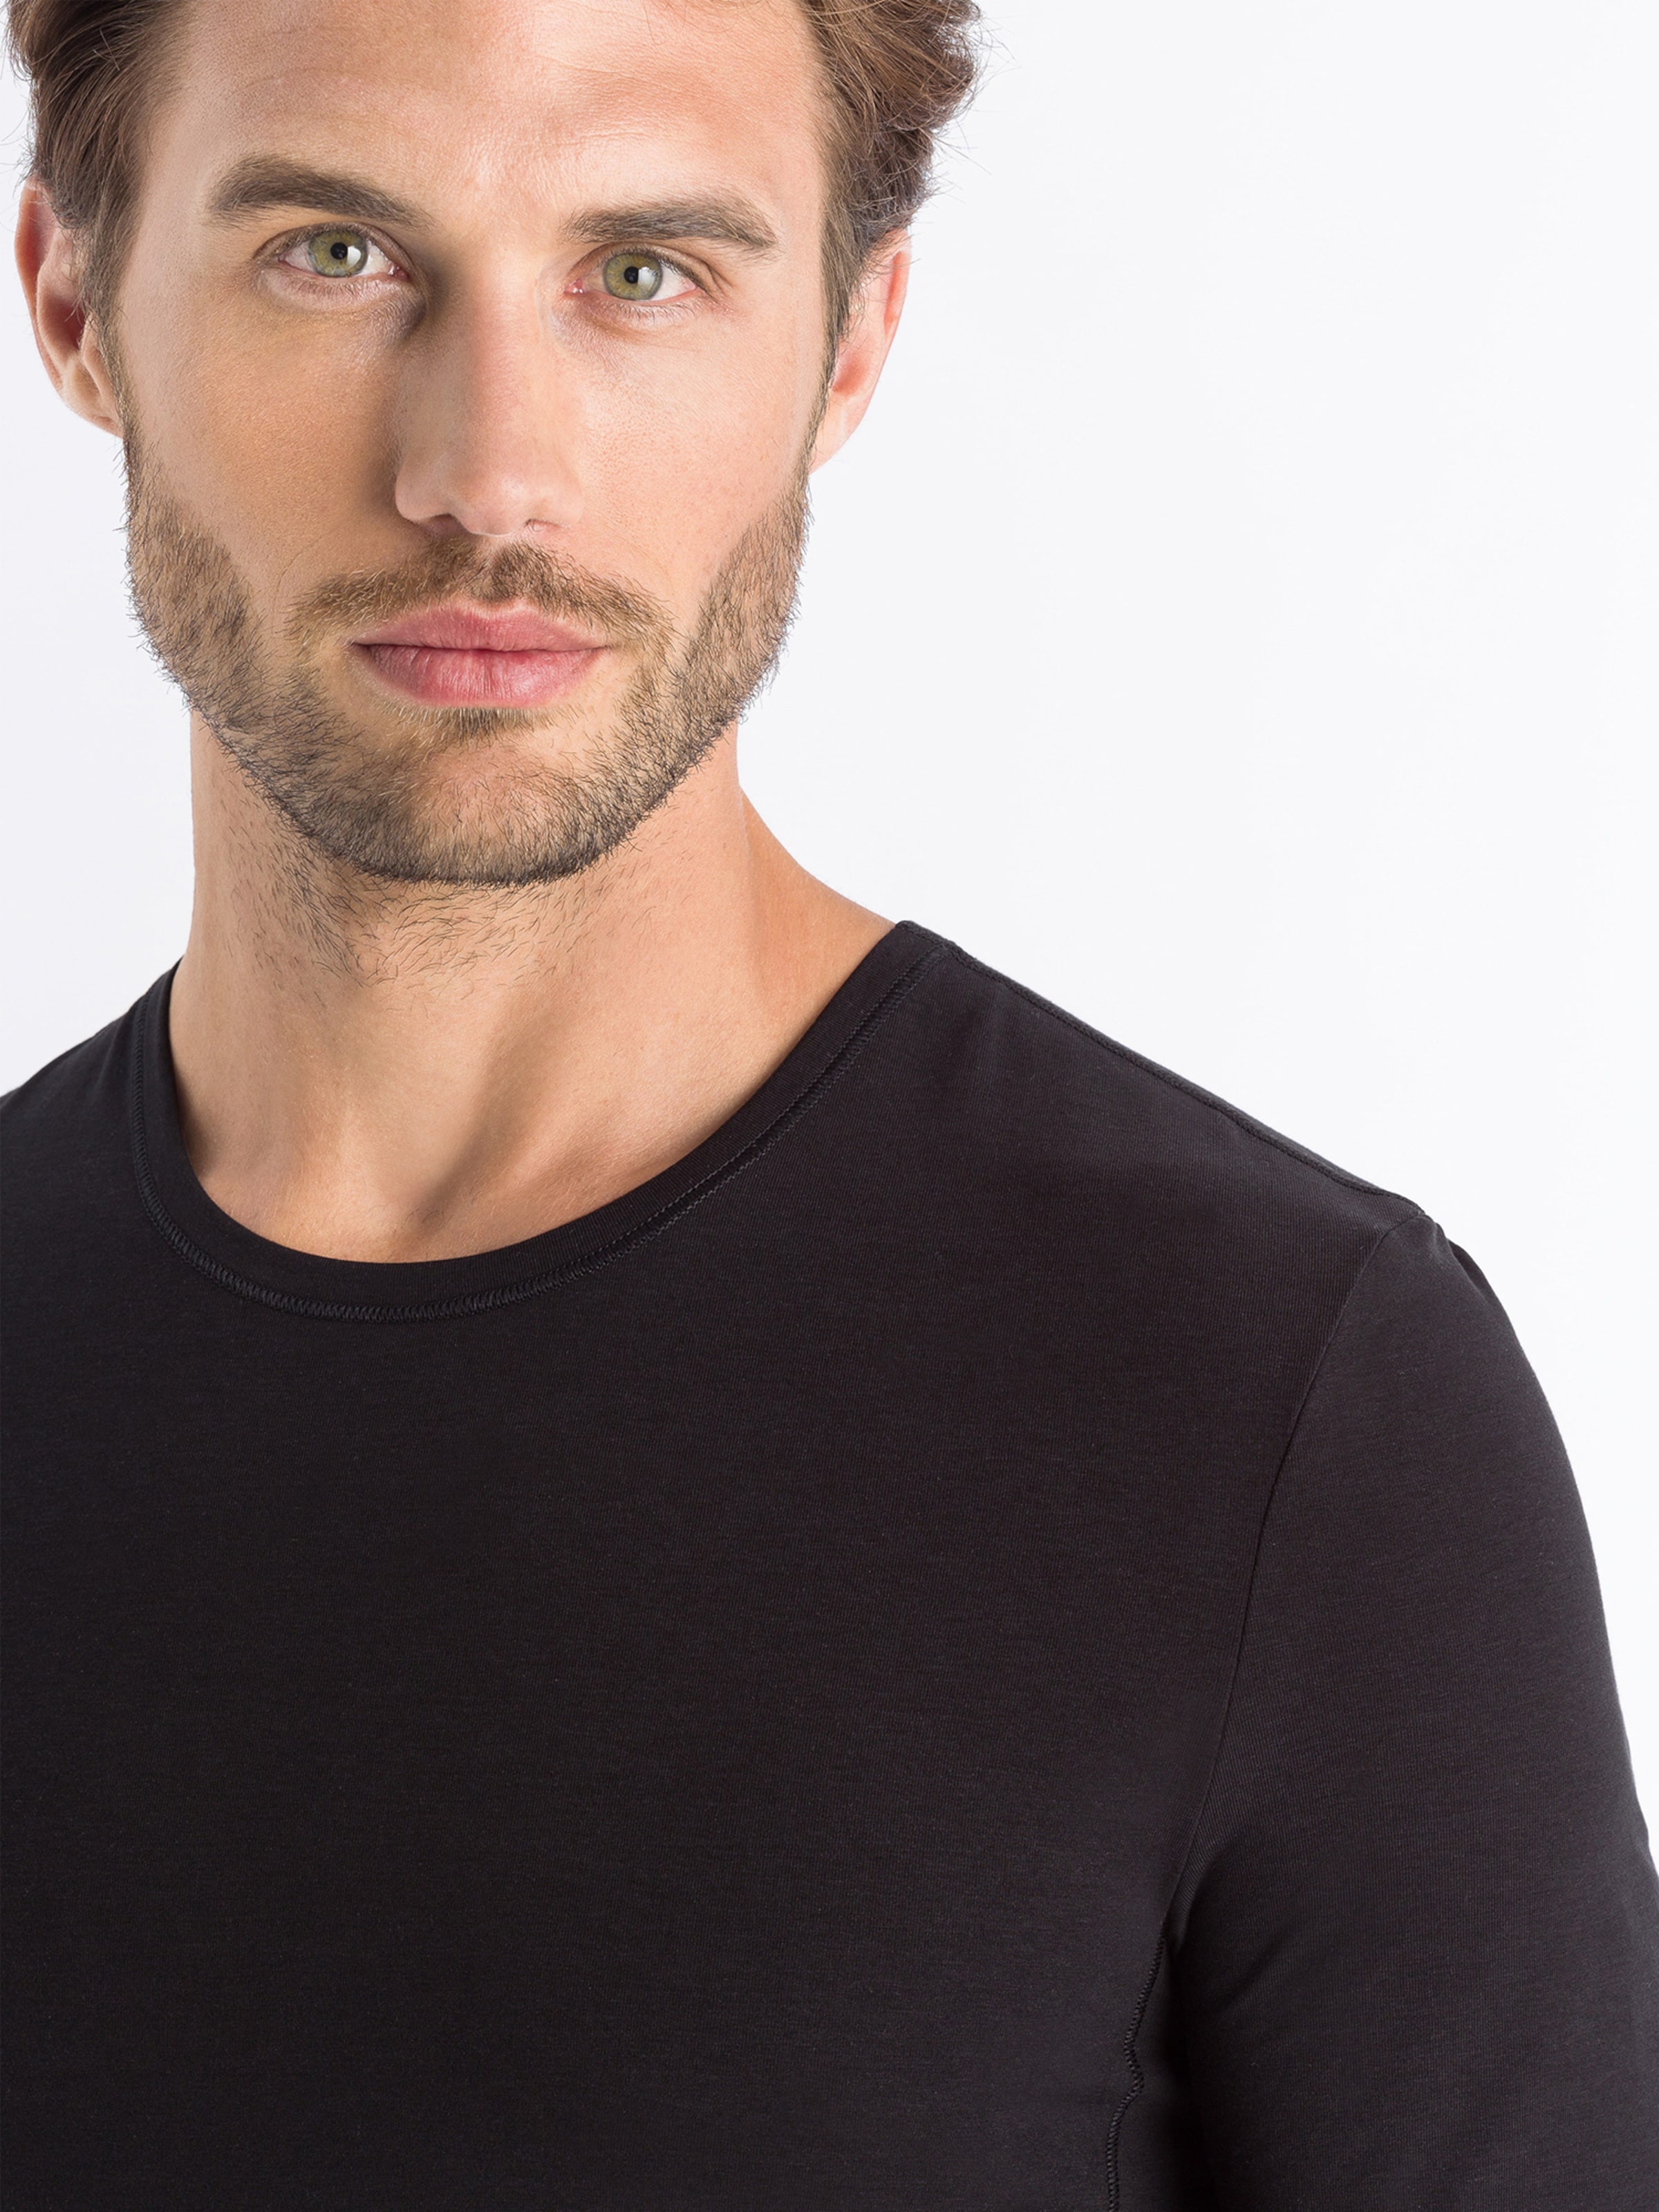 Männer Wäsche Hanro T-Shirt ' Natural Function ' in Schwarz - TX33001